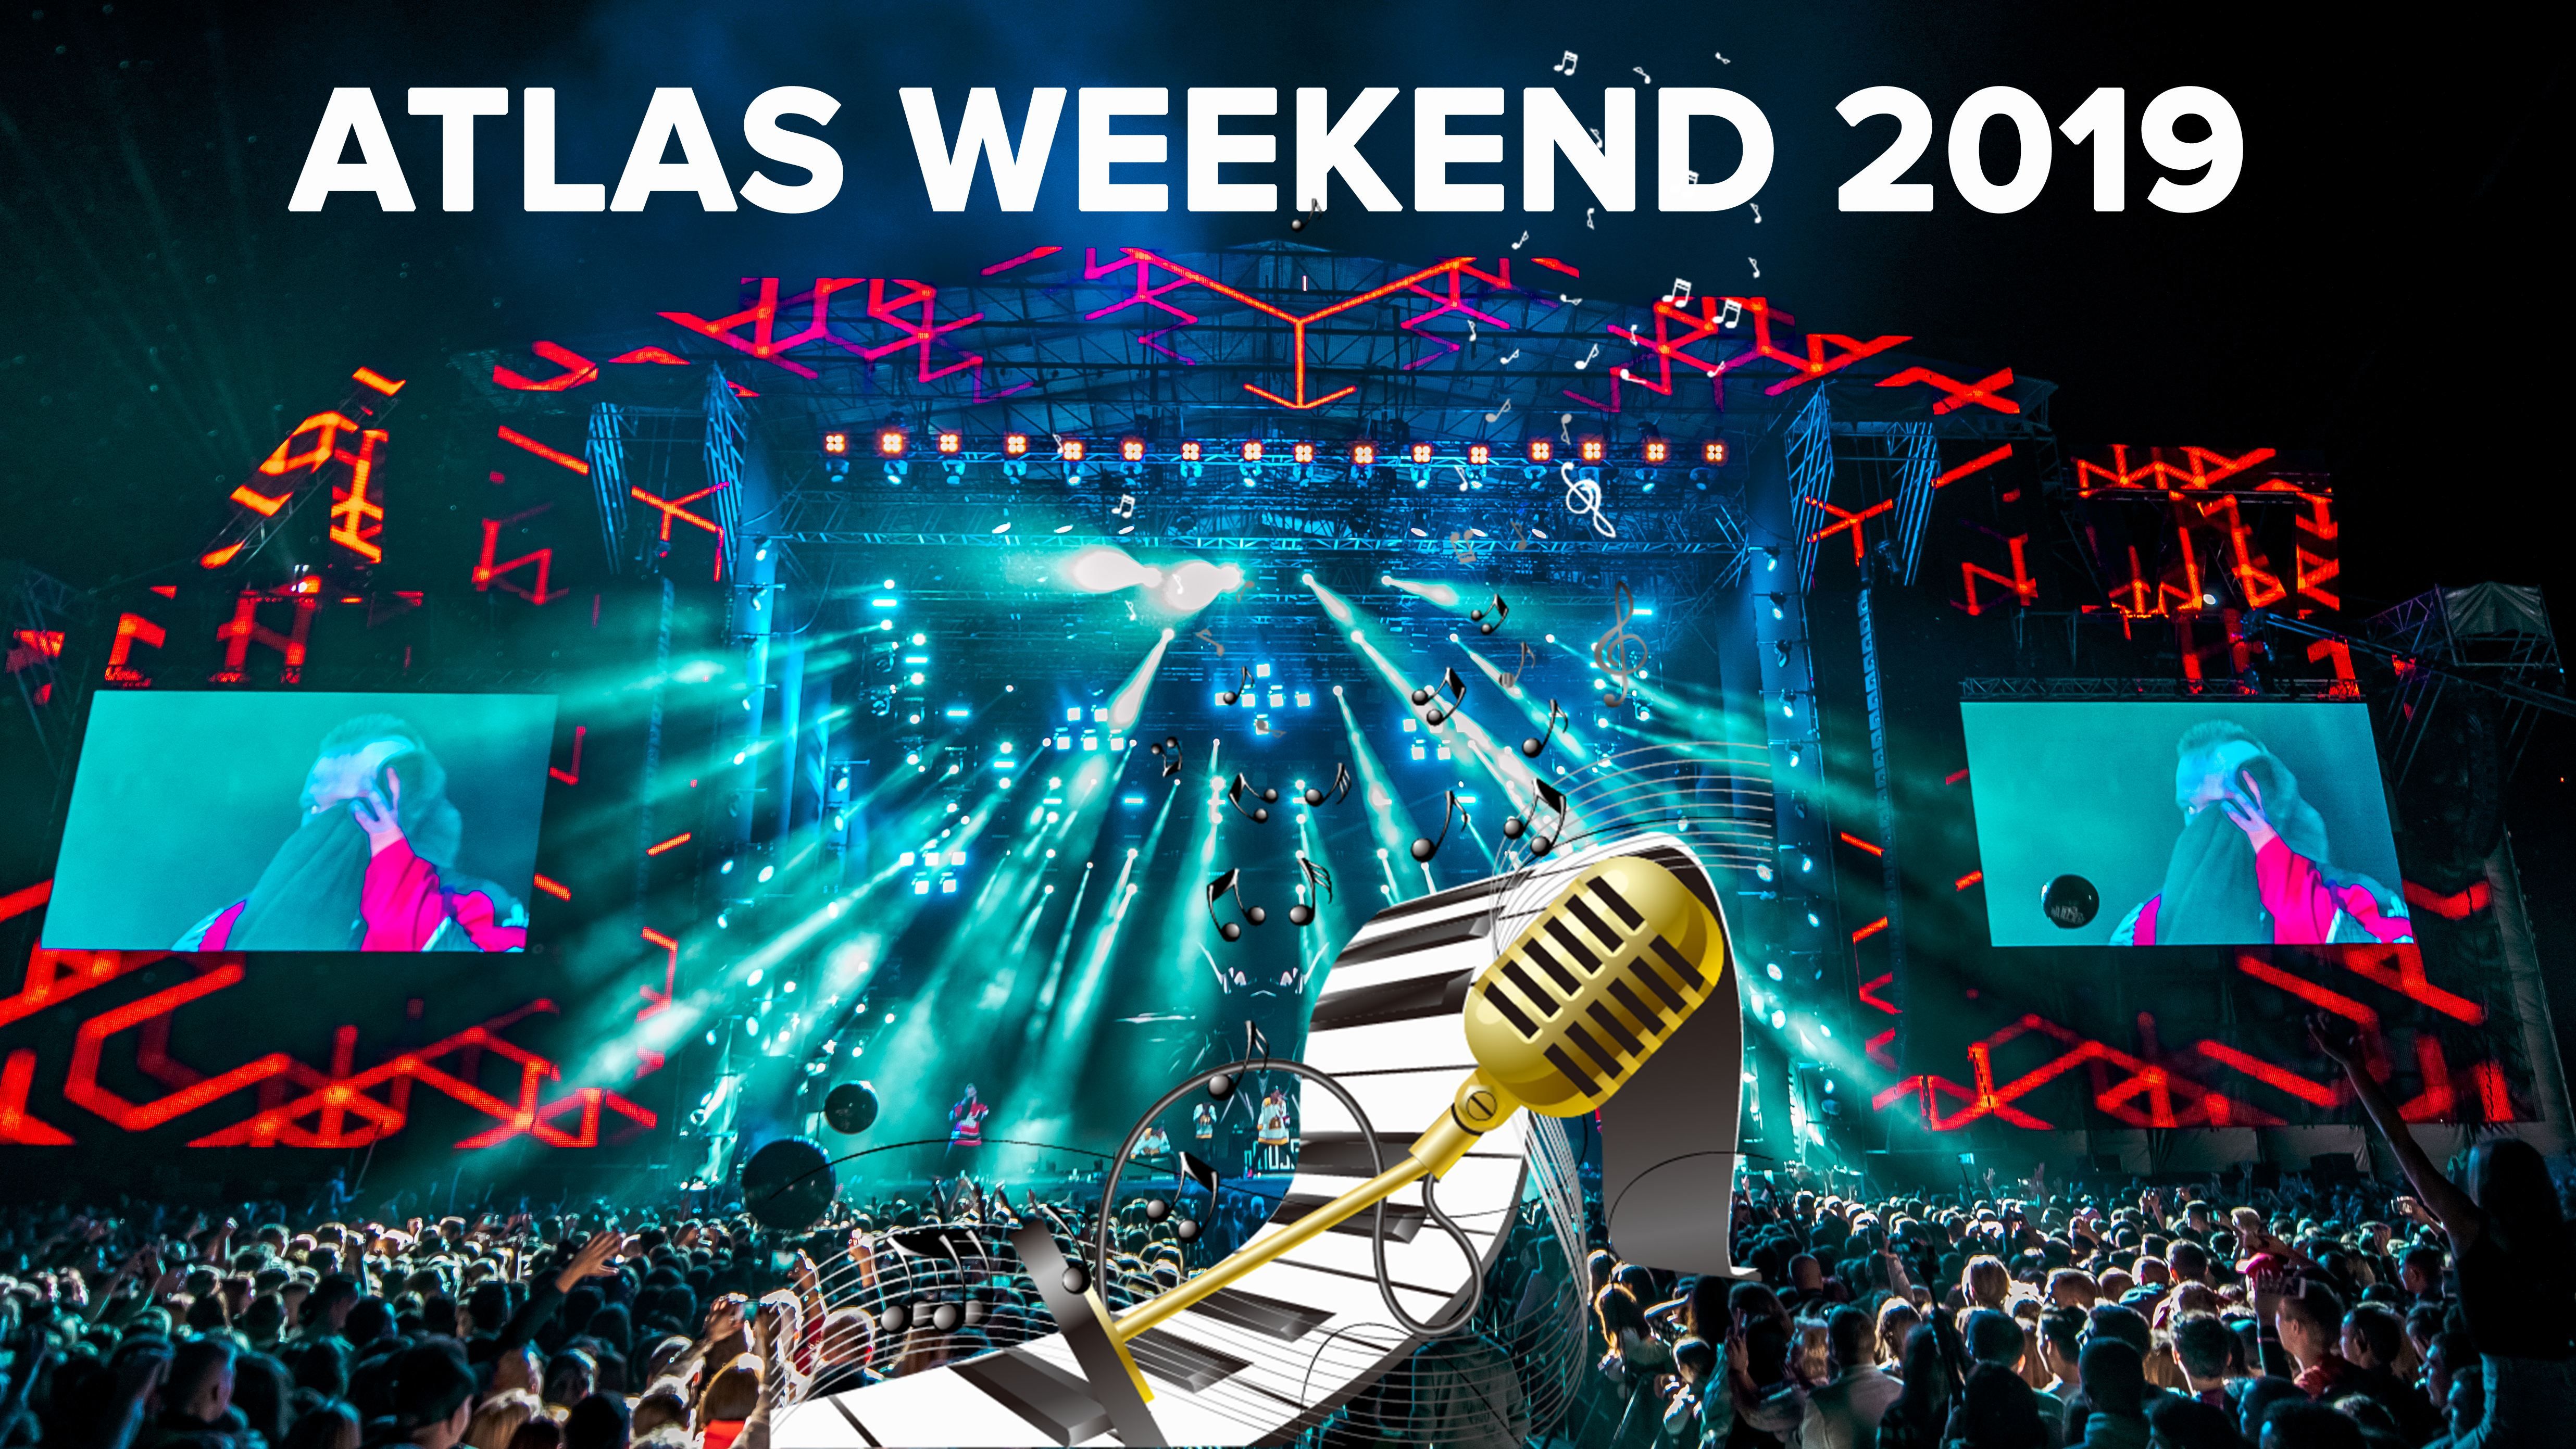 Atlas Weekend 2019 - розклад на всі дні, учасники, ціна квитка на фестиваль у Києві